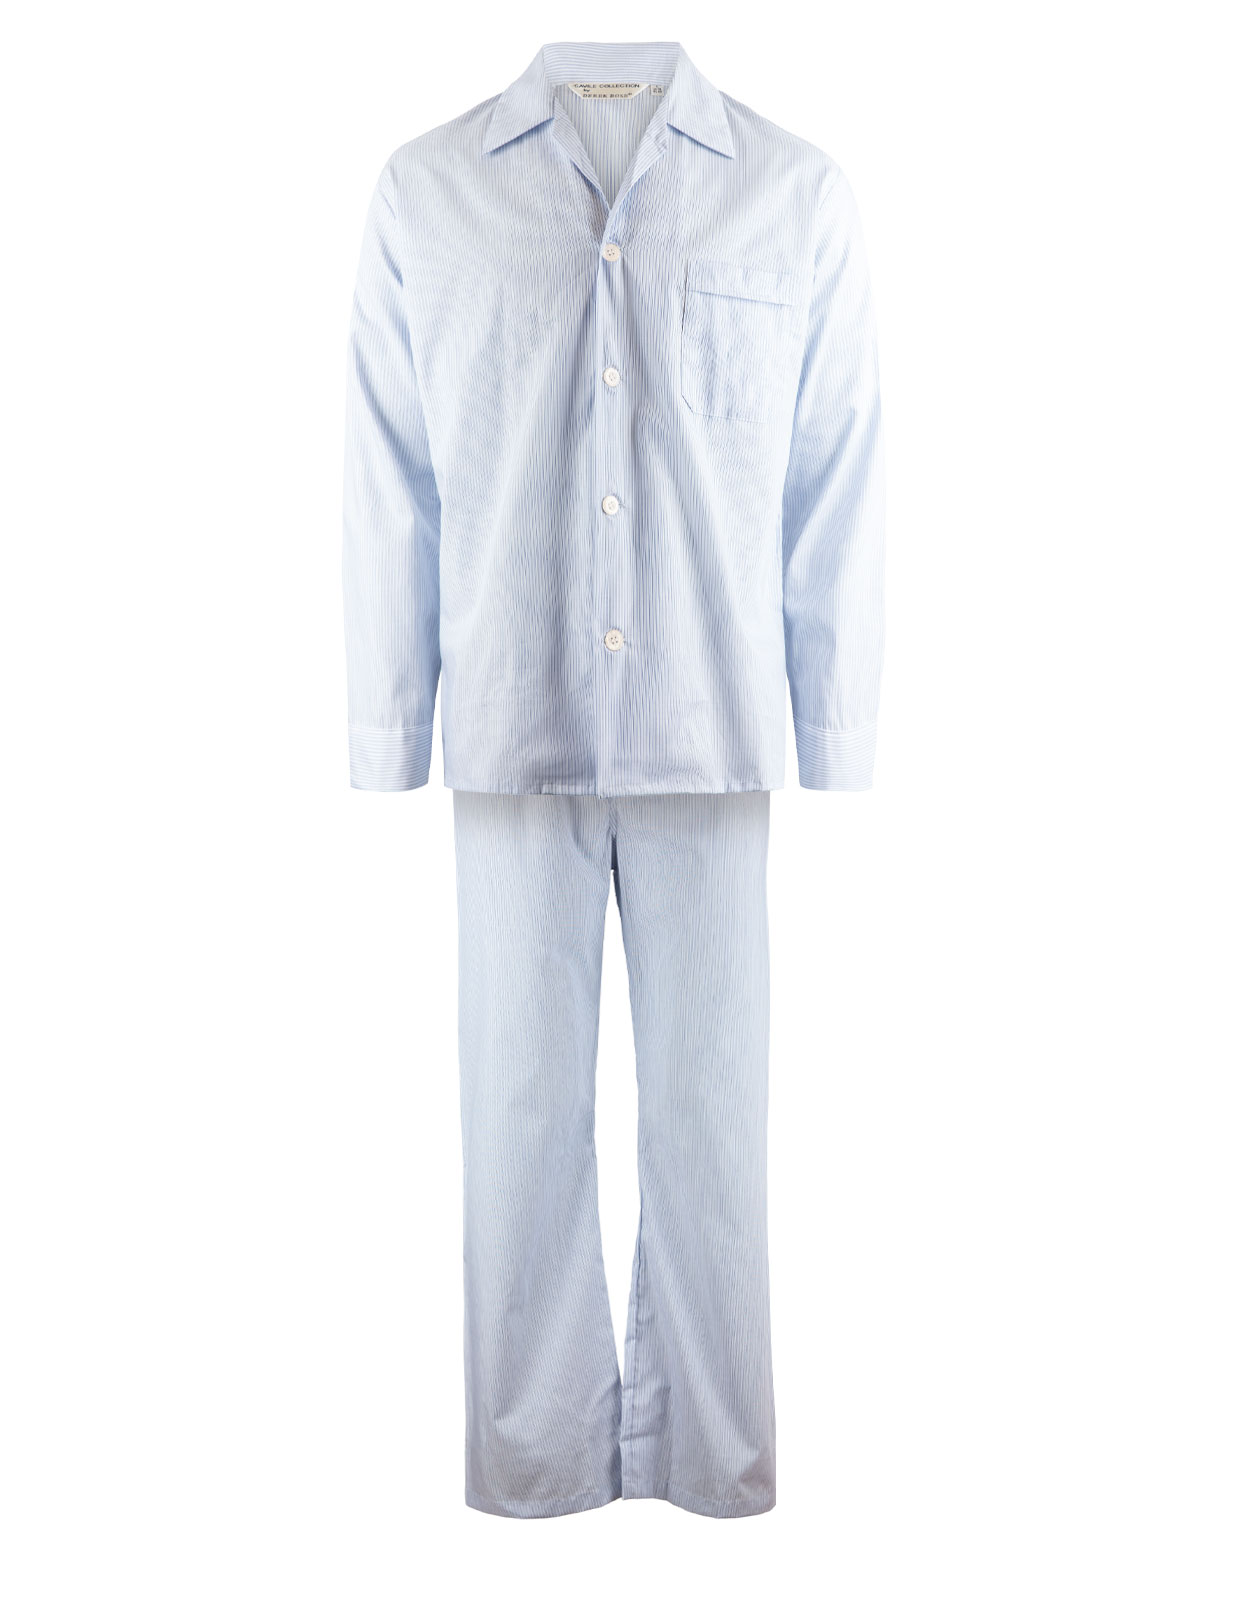 Pyjama Set UK Blue Stripe